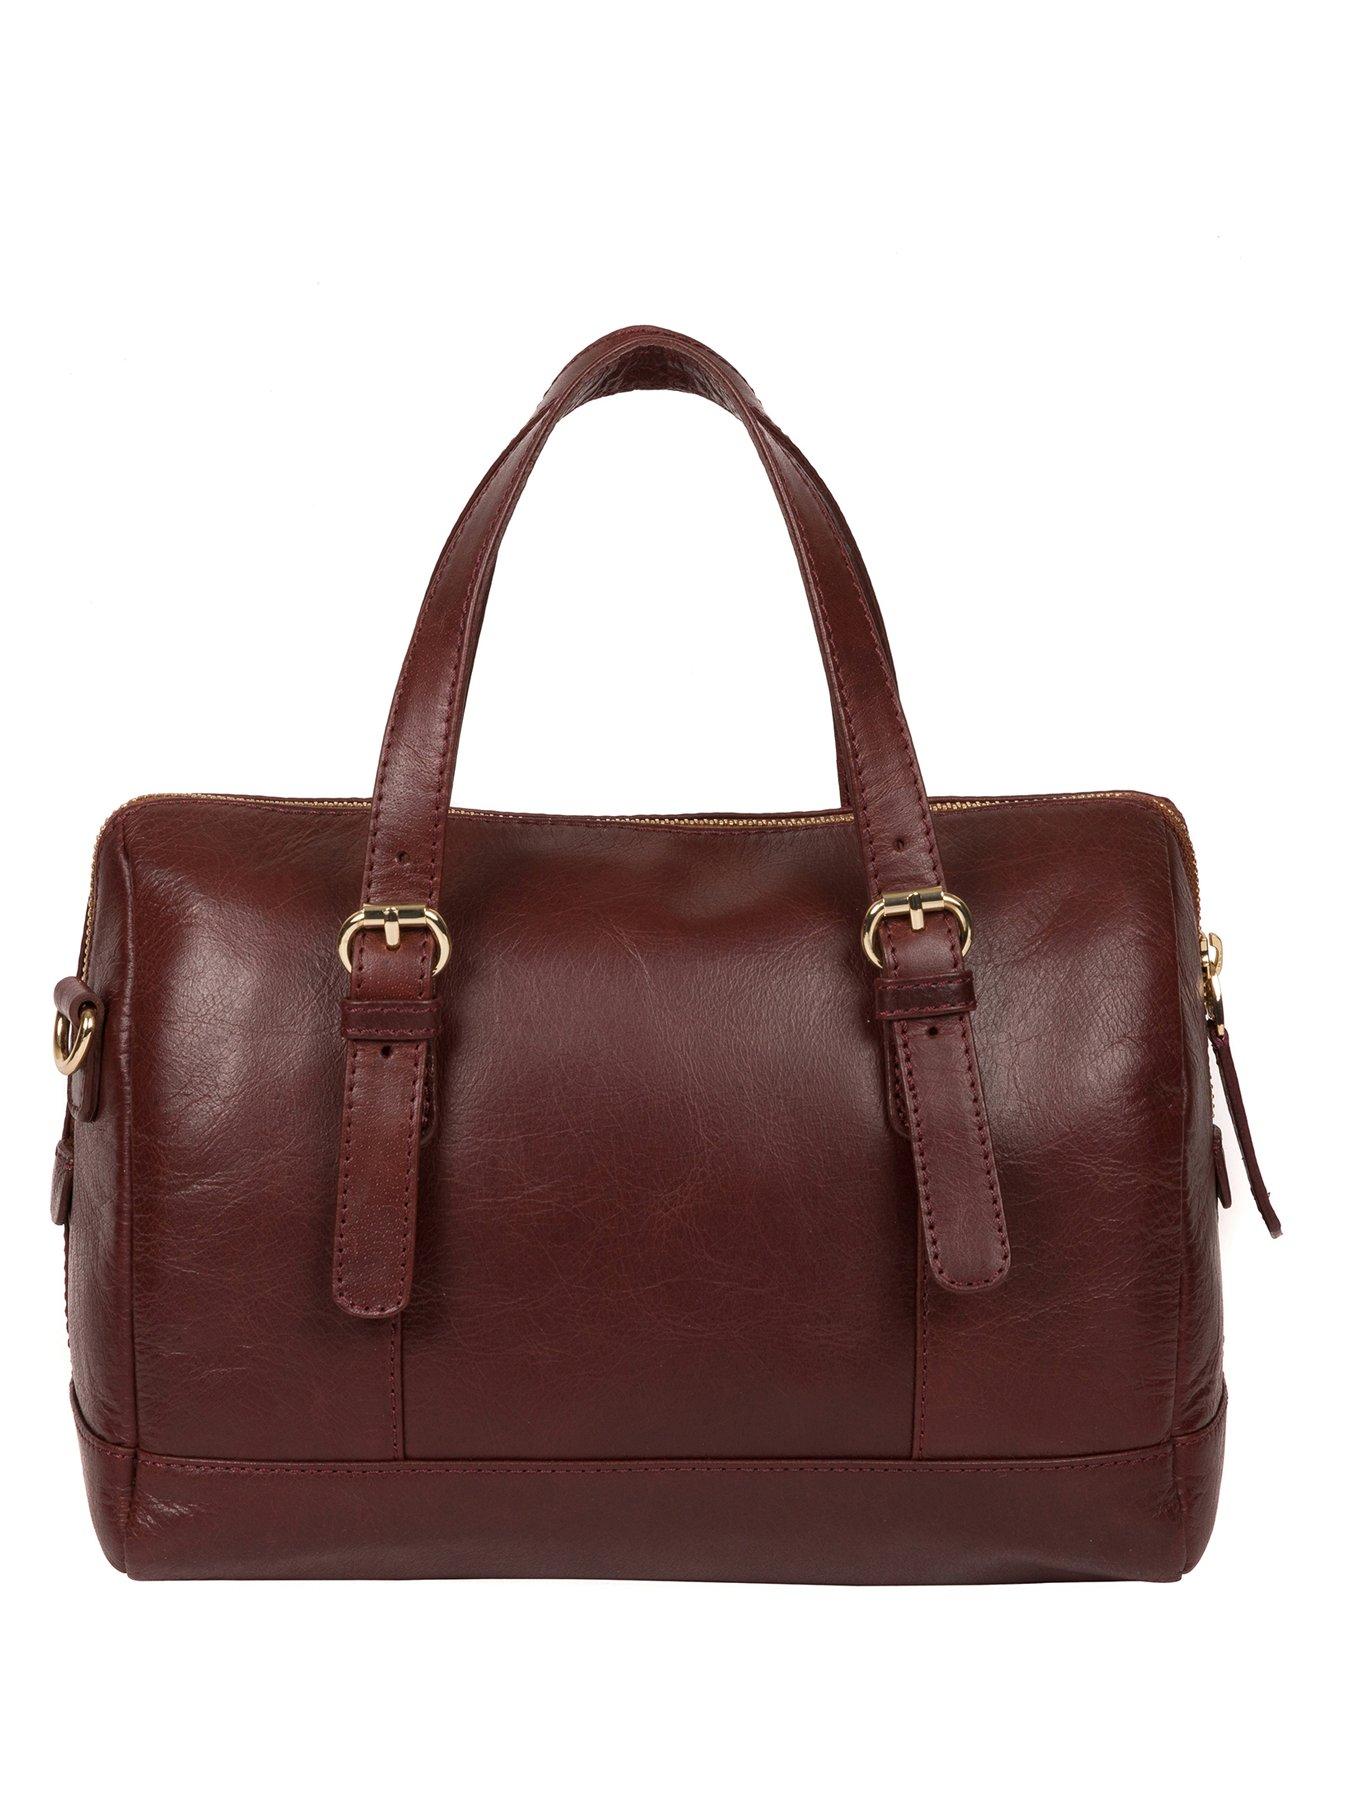  Iris Leather Zip Top Handbag - Chestnut